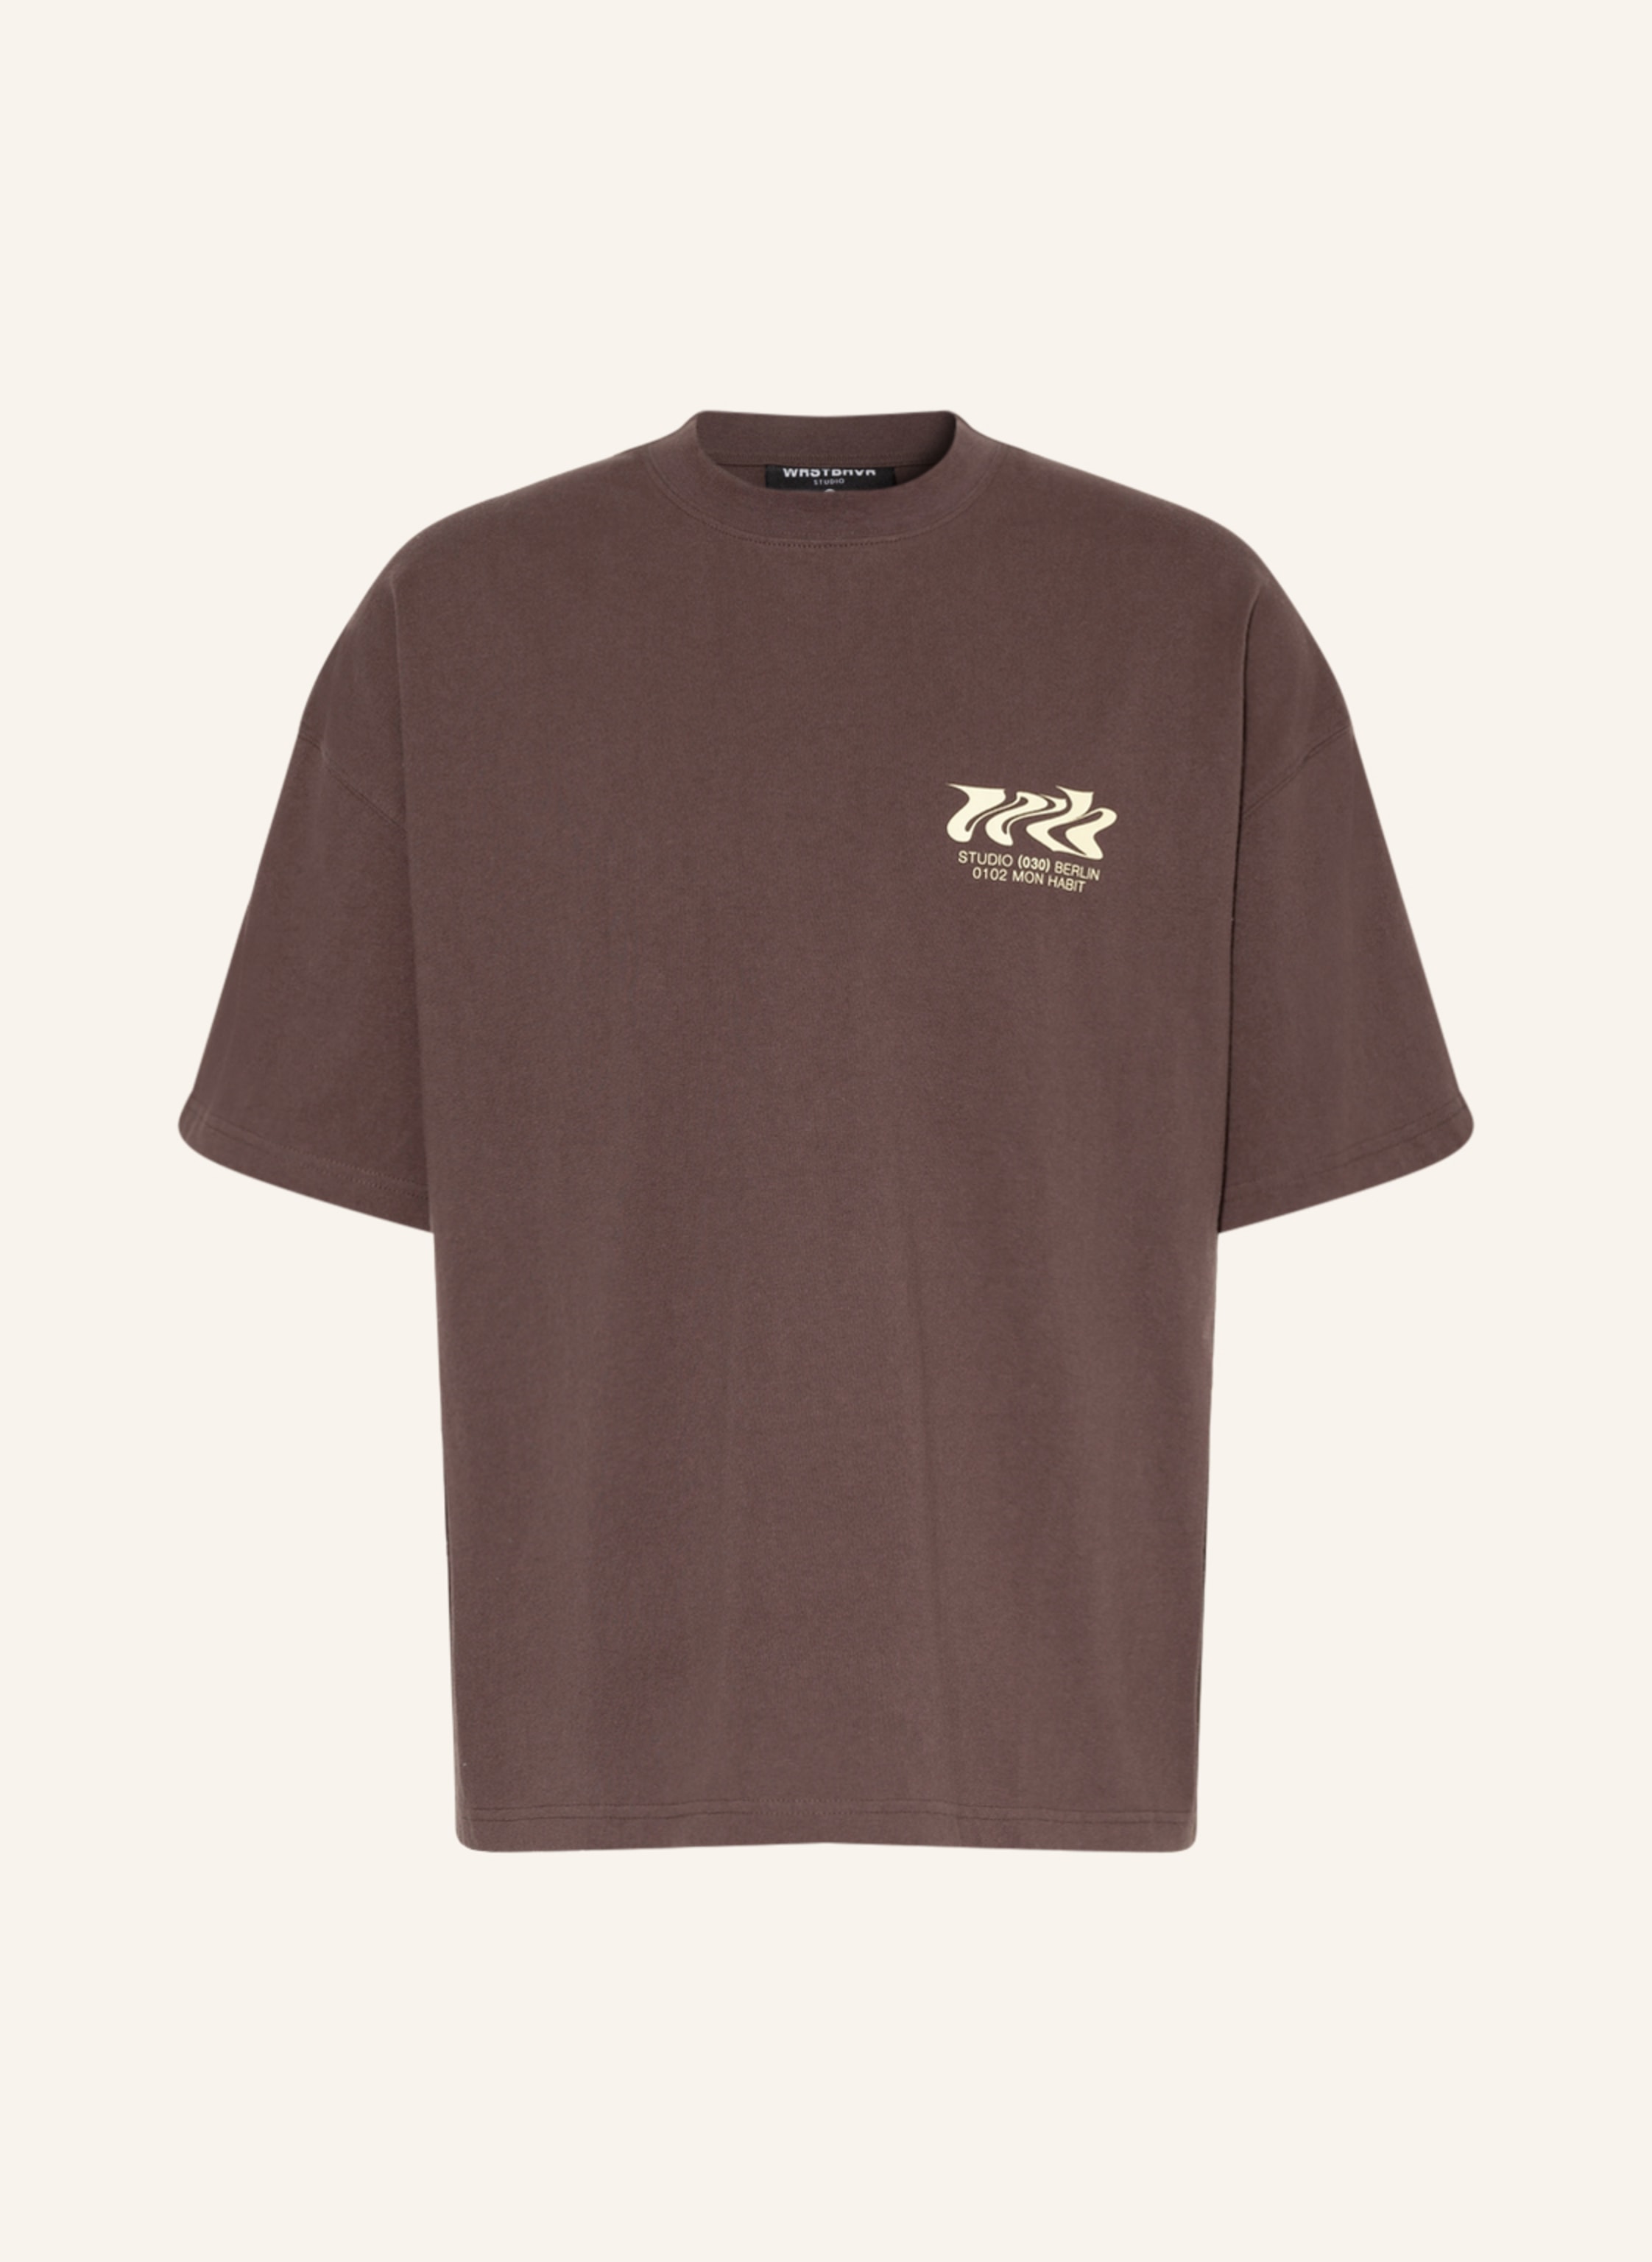 WRSTBHVR T-shirt TYPE in brown | Breuninger